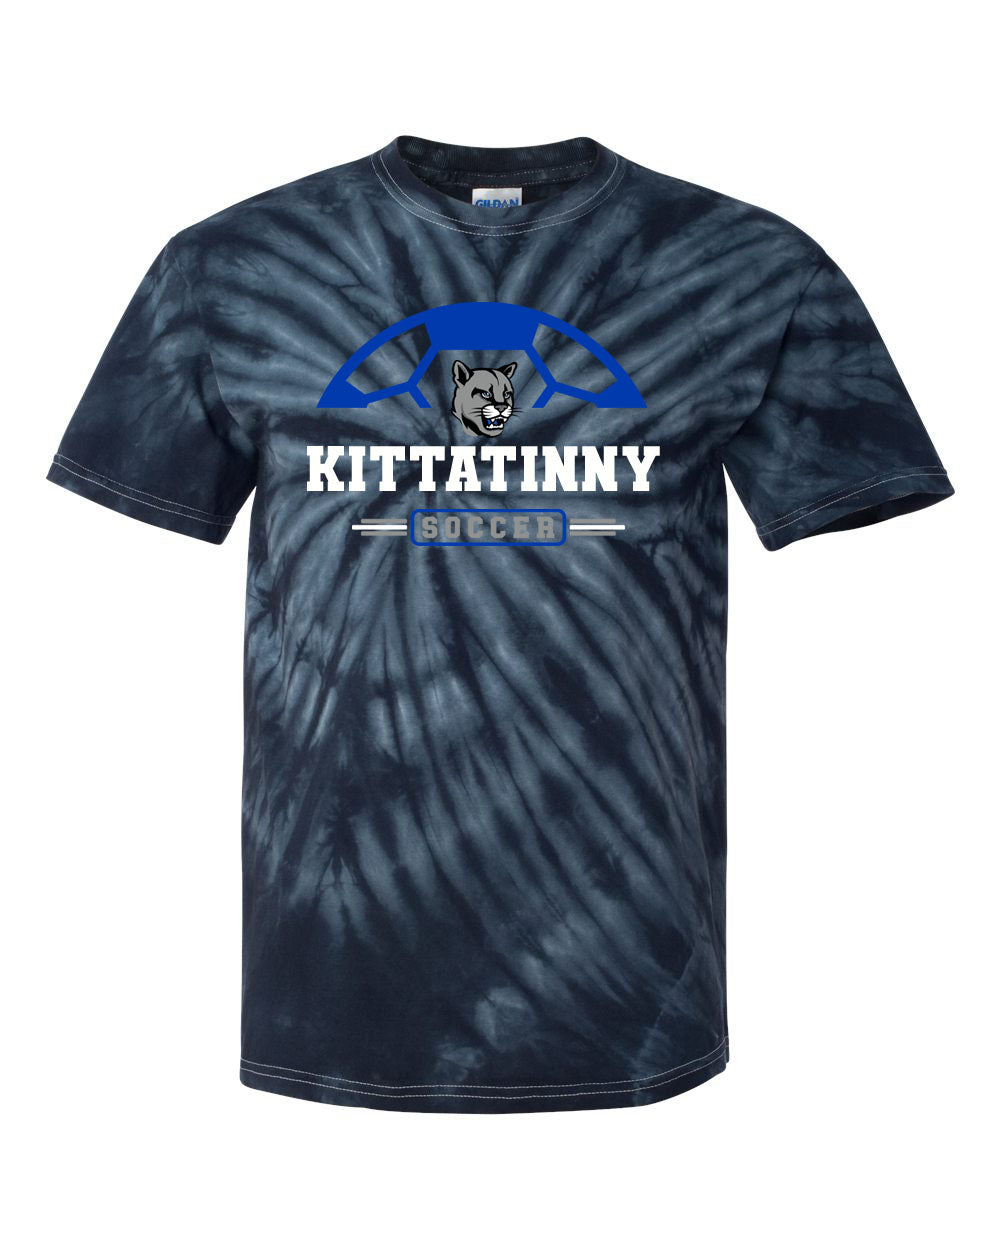 Kittatinny Soccer Tie Dye t-shirt Design 2